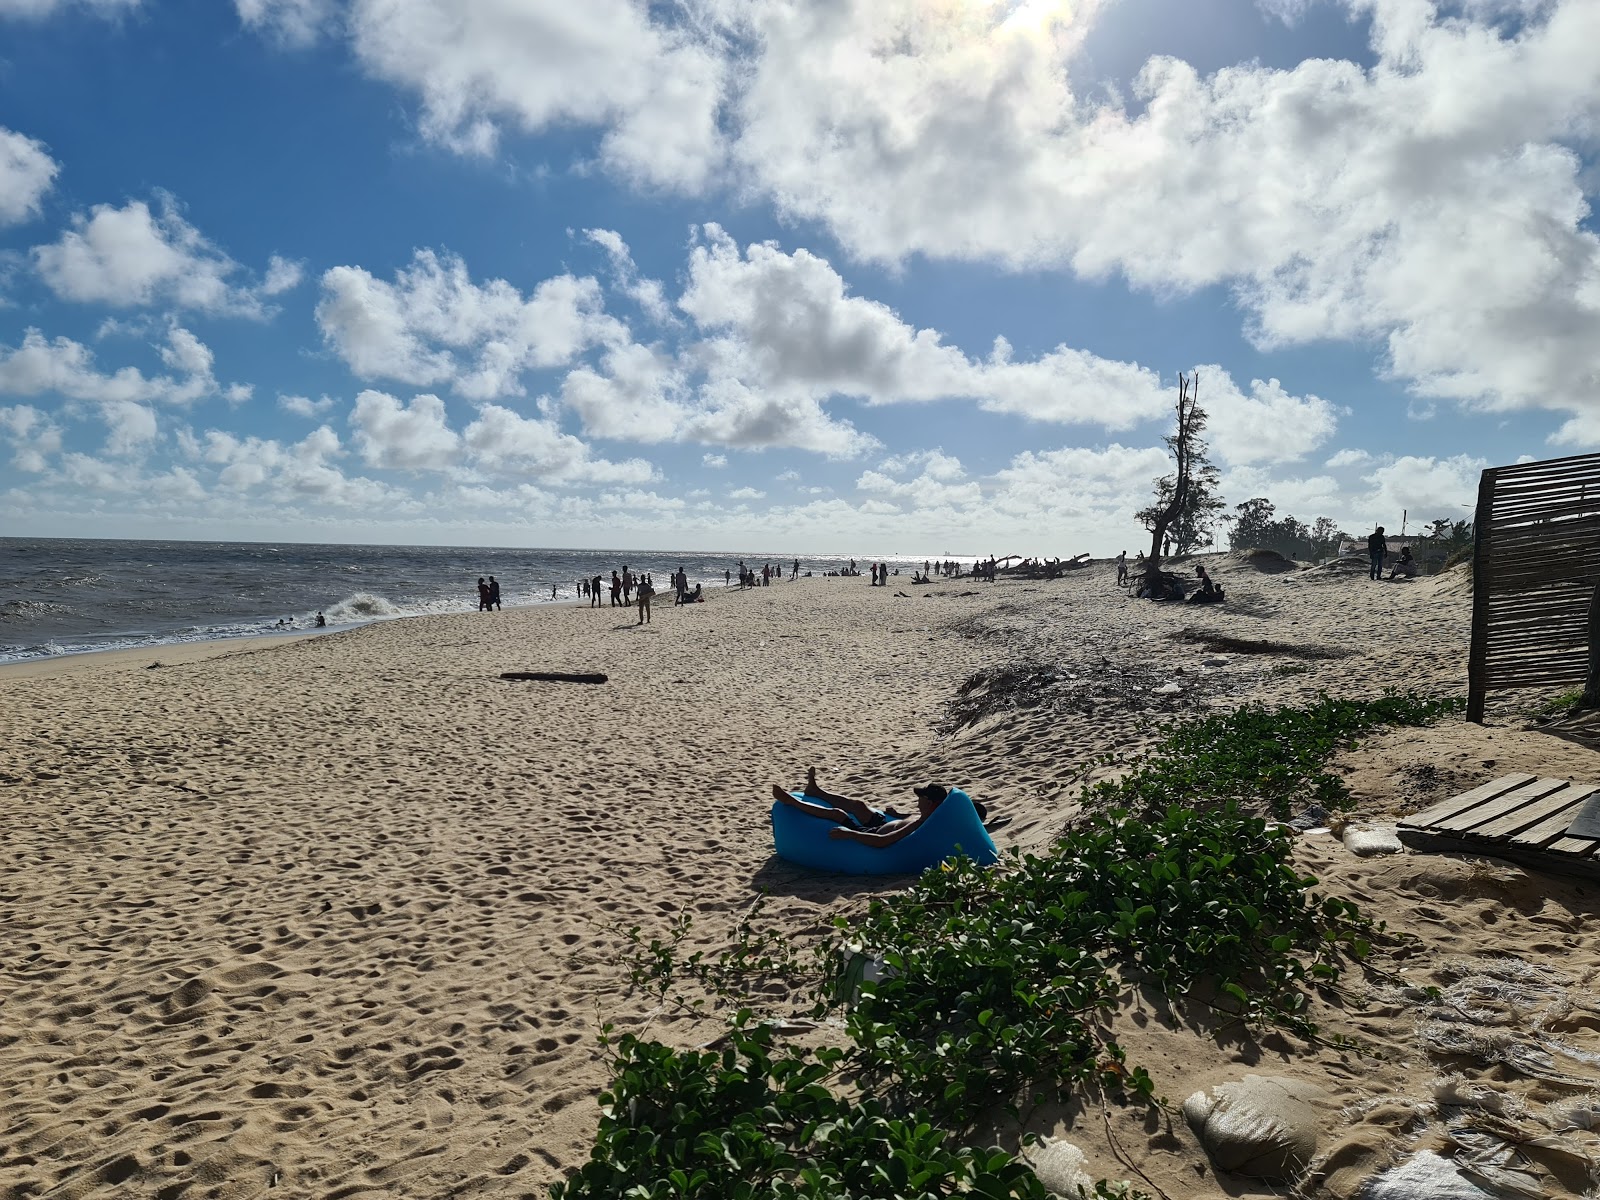 Zdjęcie Beira Beach z poziomem czystości wysoki